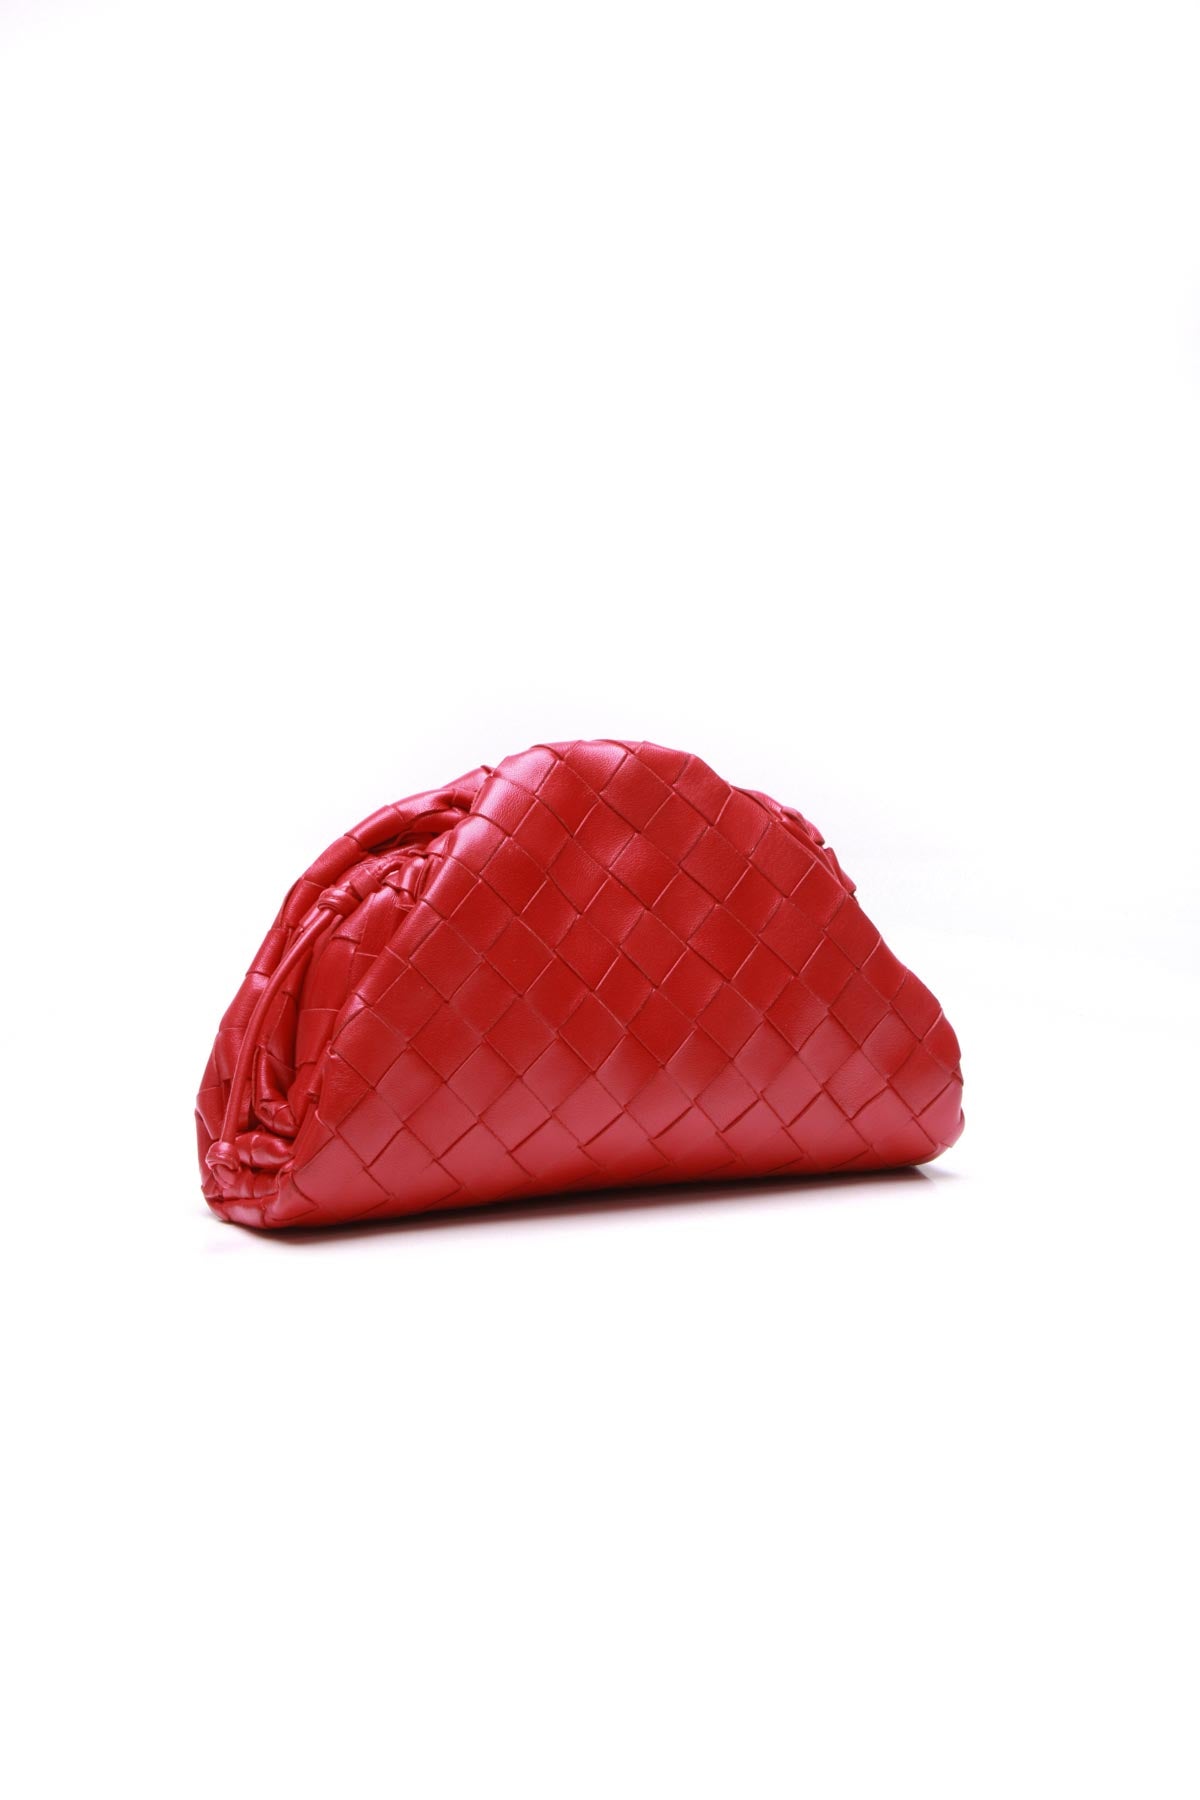 Bottega Veneta Pouch Intrecciato Leather Clutch Bag Sold